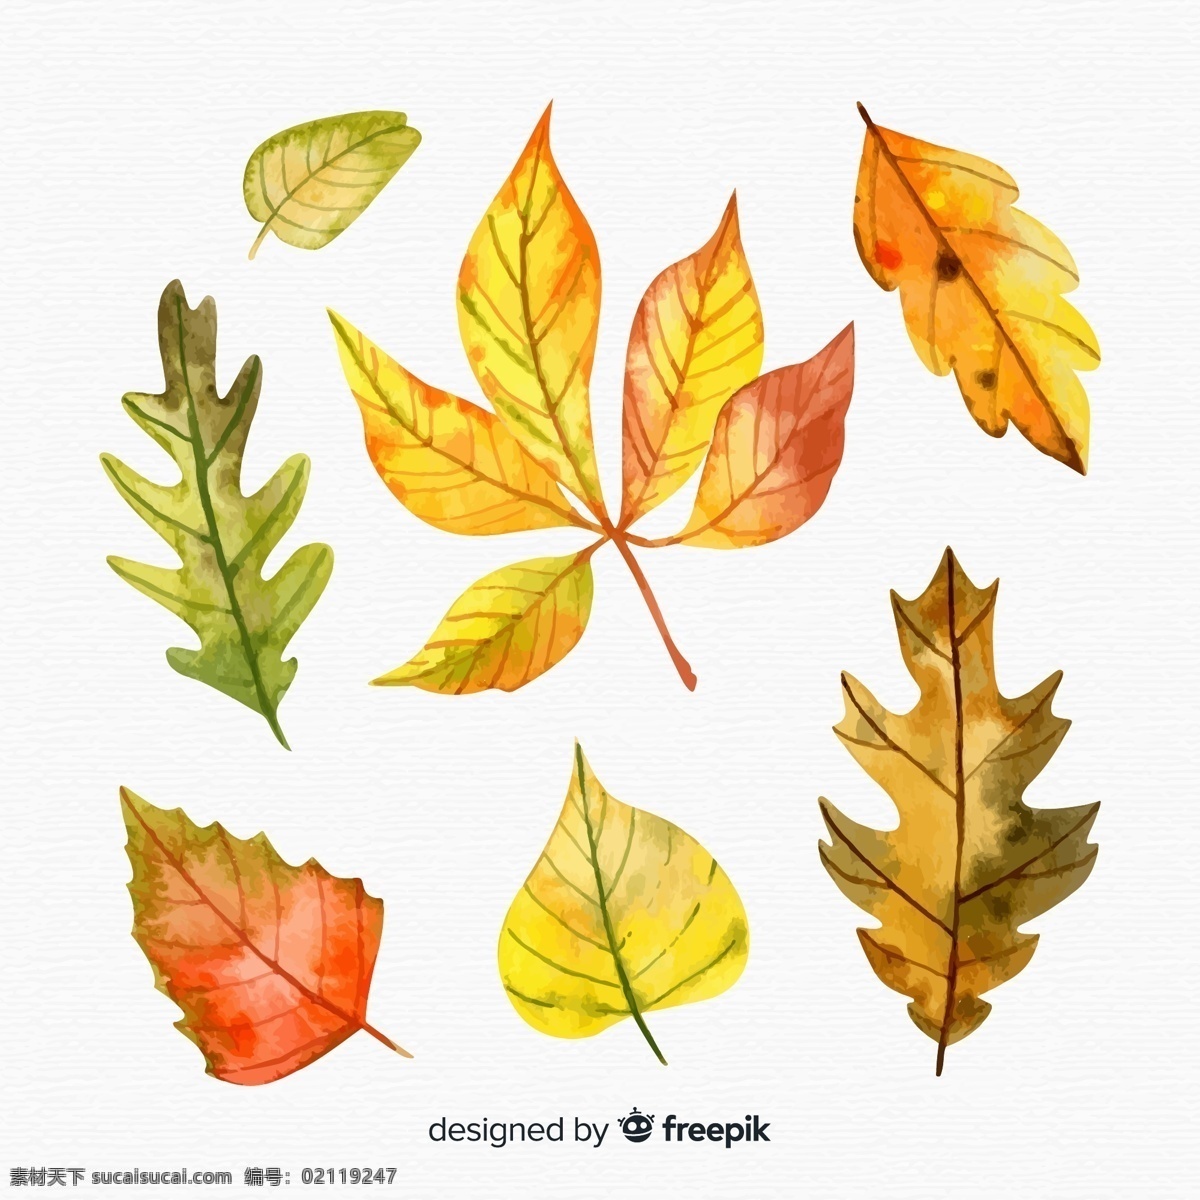 手绘 水彩 绘 秋季 树叶 落叶 叶子黄了 落叶彩绘 手绘树叶 生物世界 树木树叶